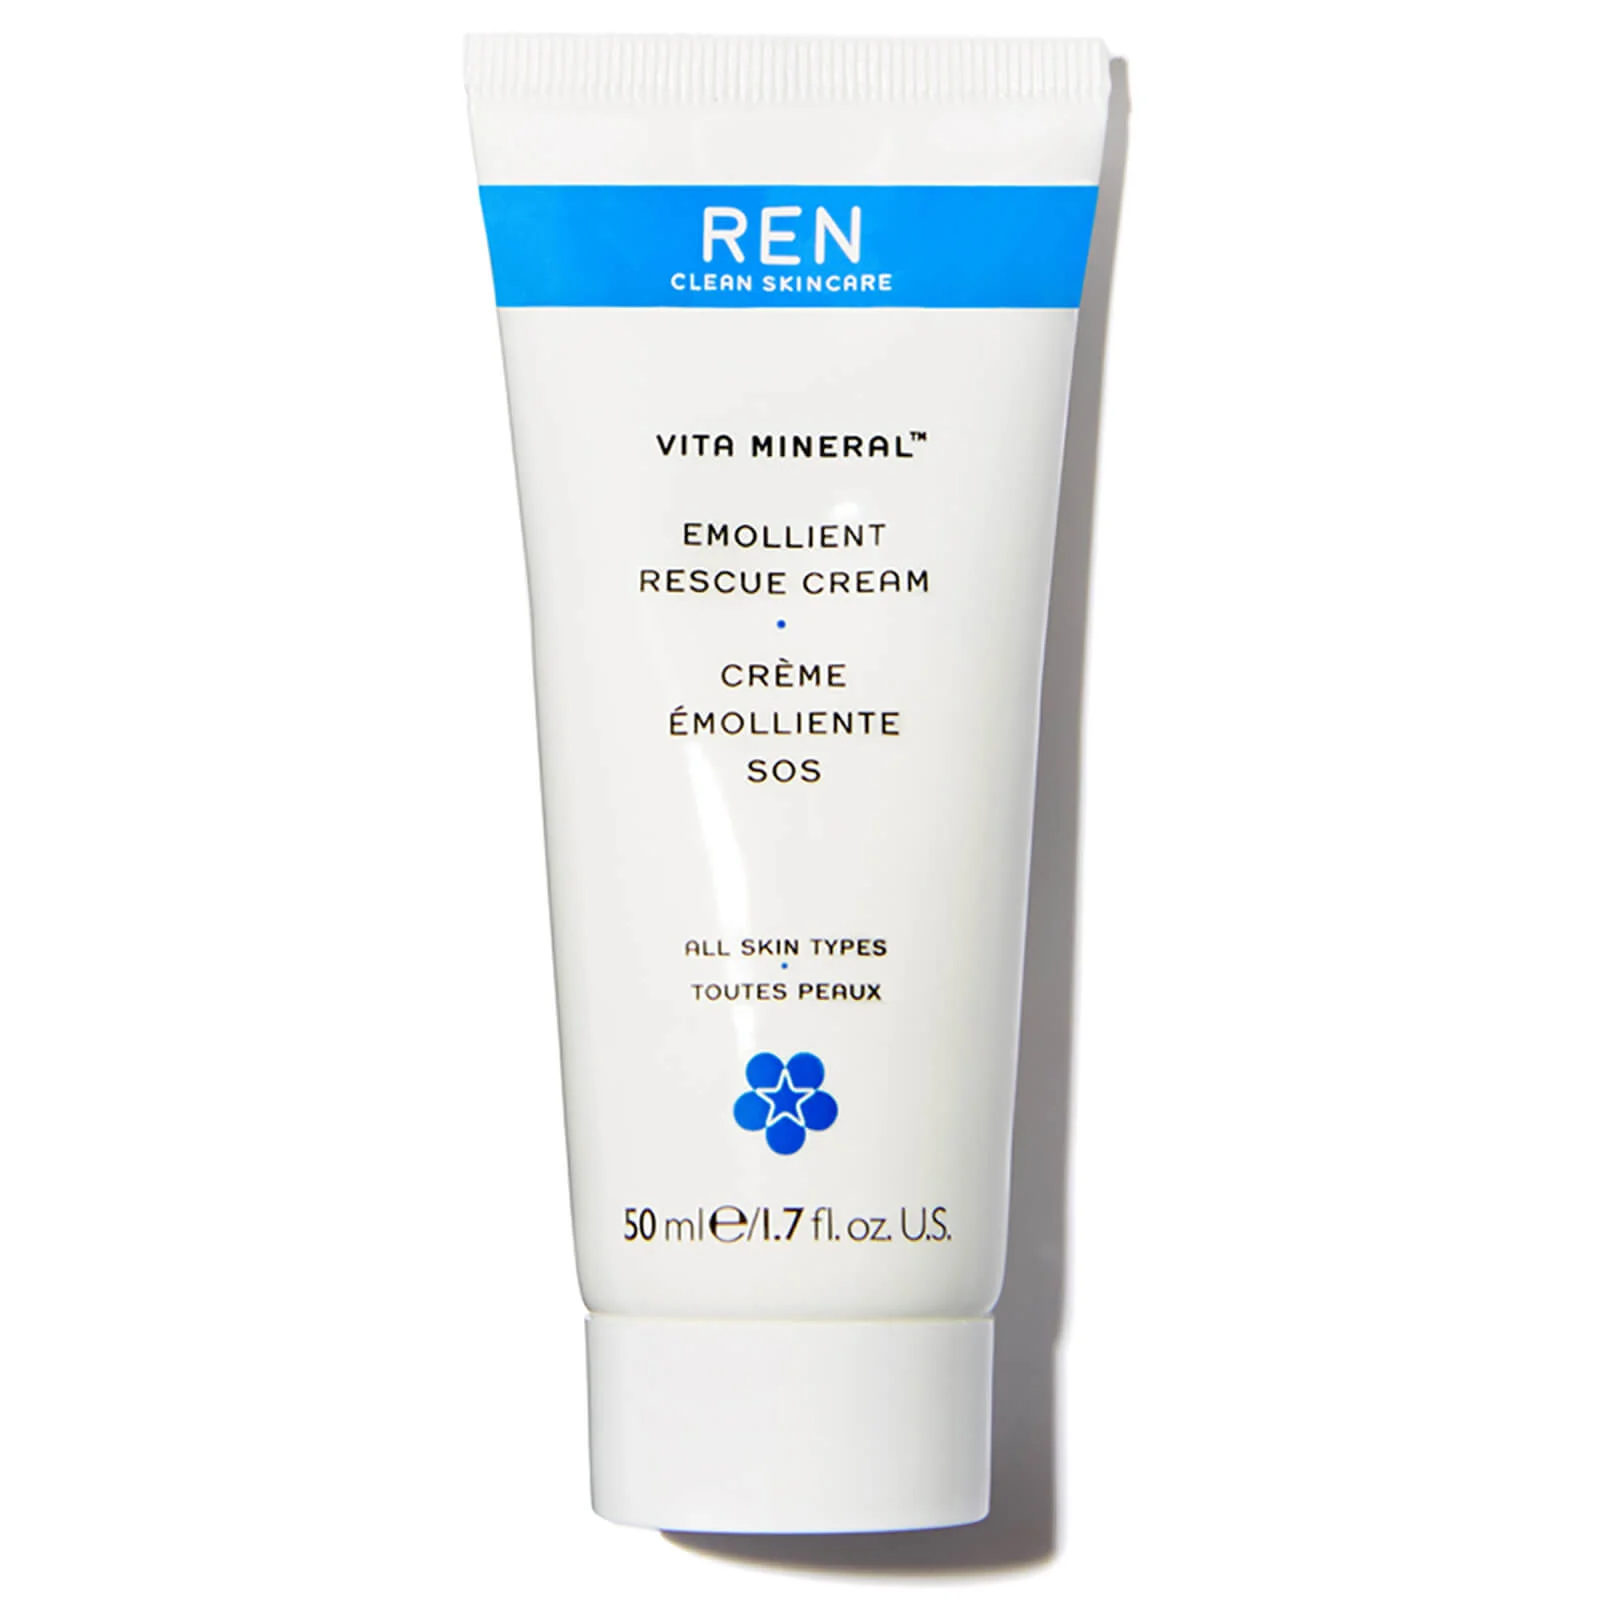 REN Clean Skincare Vita Mineral Emollient Rescue Cream 50ml Image 1